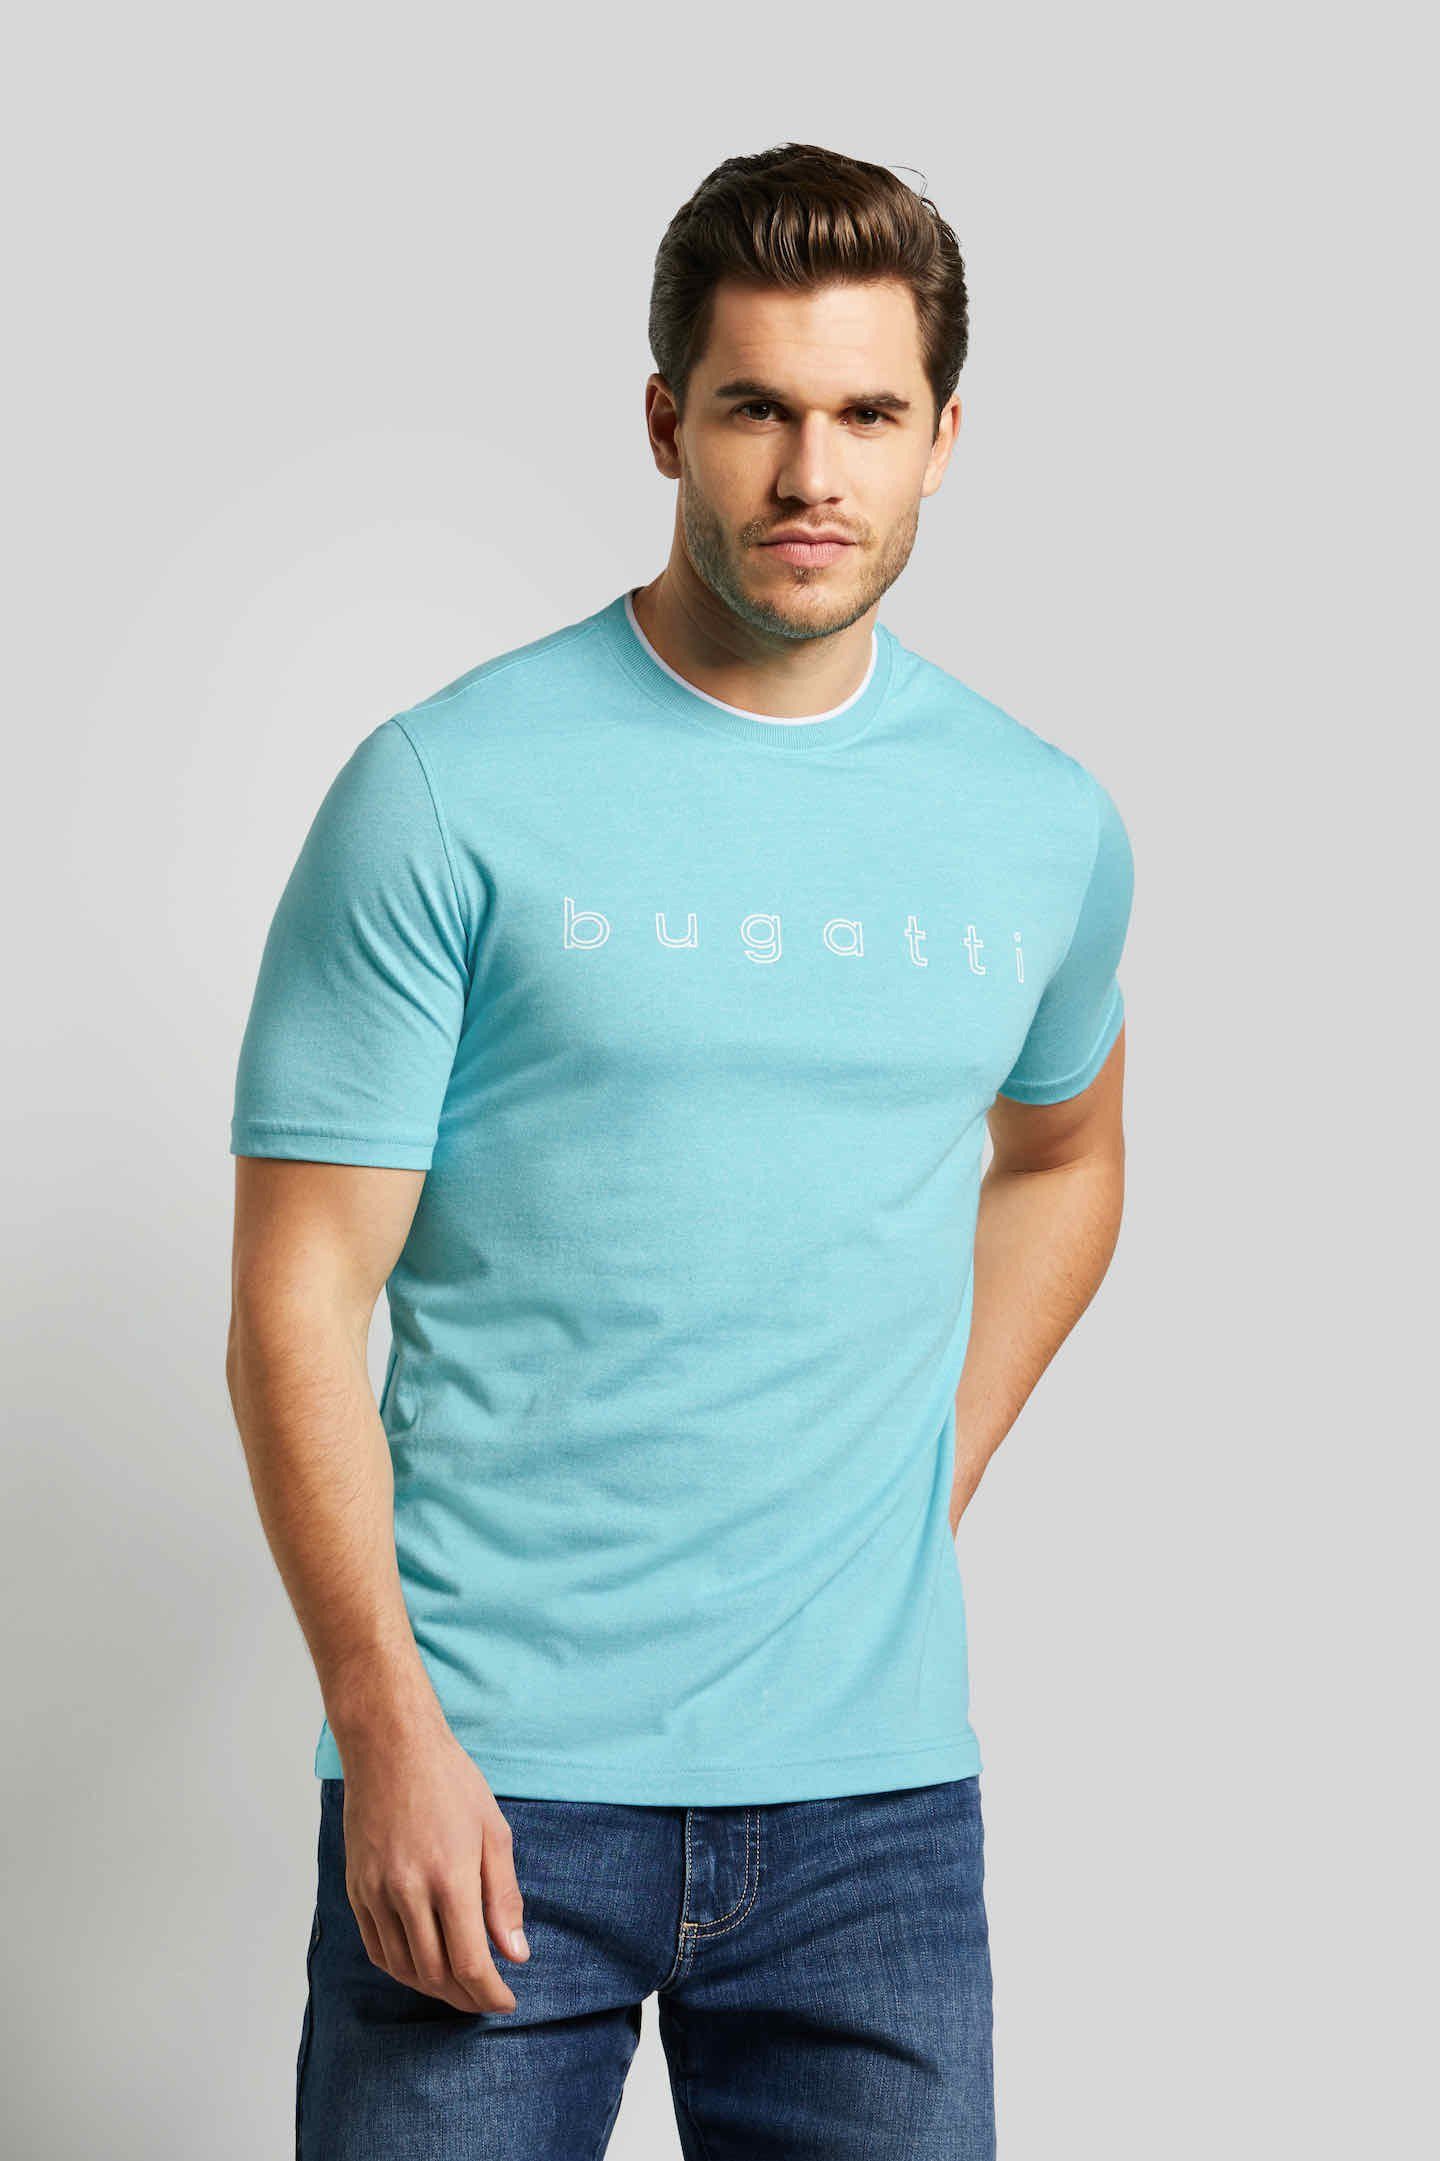 Kragen mit Kontraststreifen aqua bugatti T-Shirt am modischen